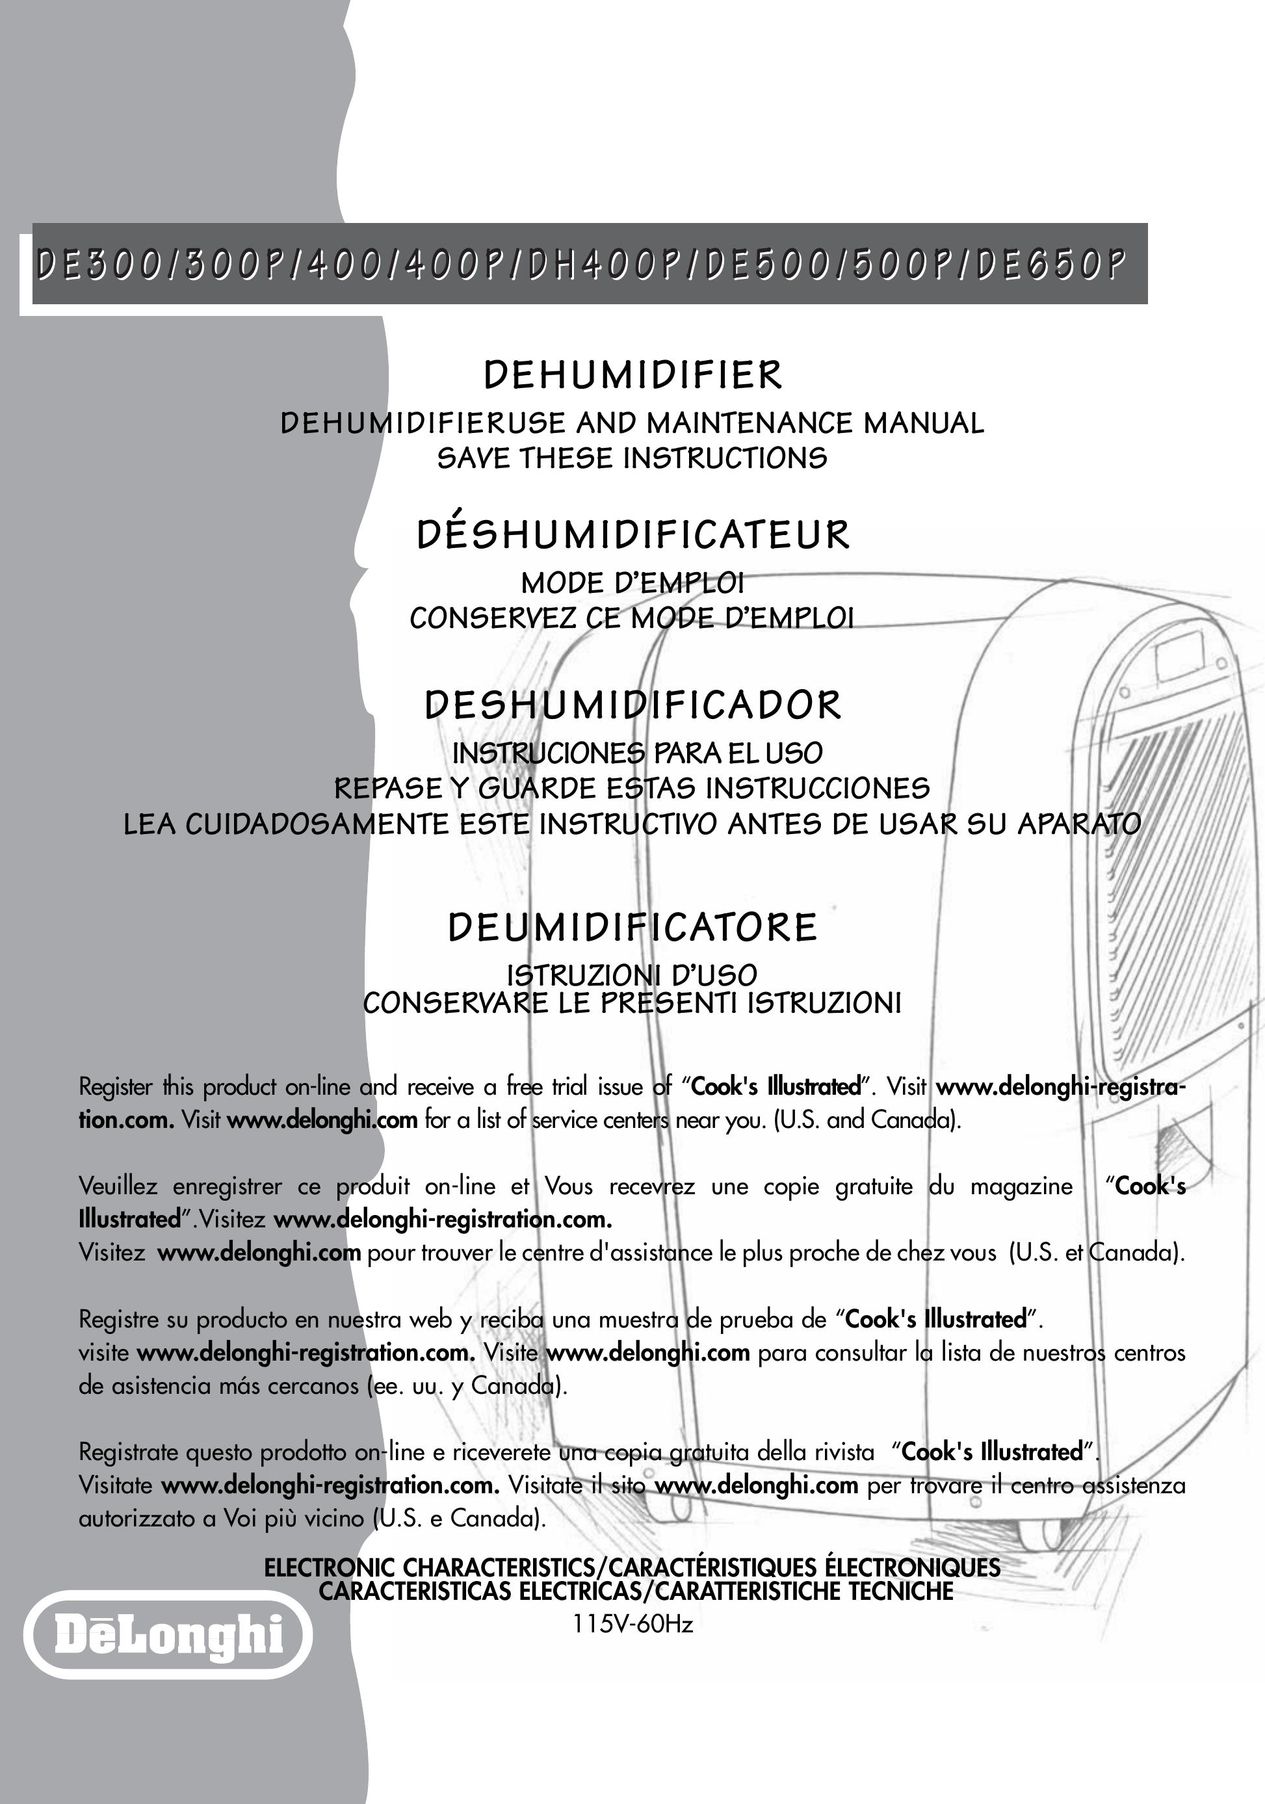 DeLonghi DE 500P Dehumidifier User Manual